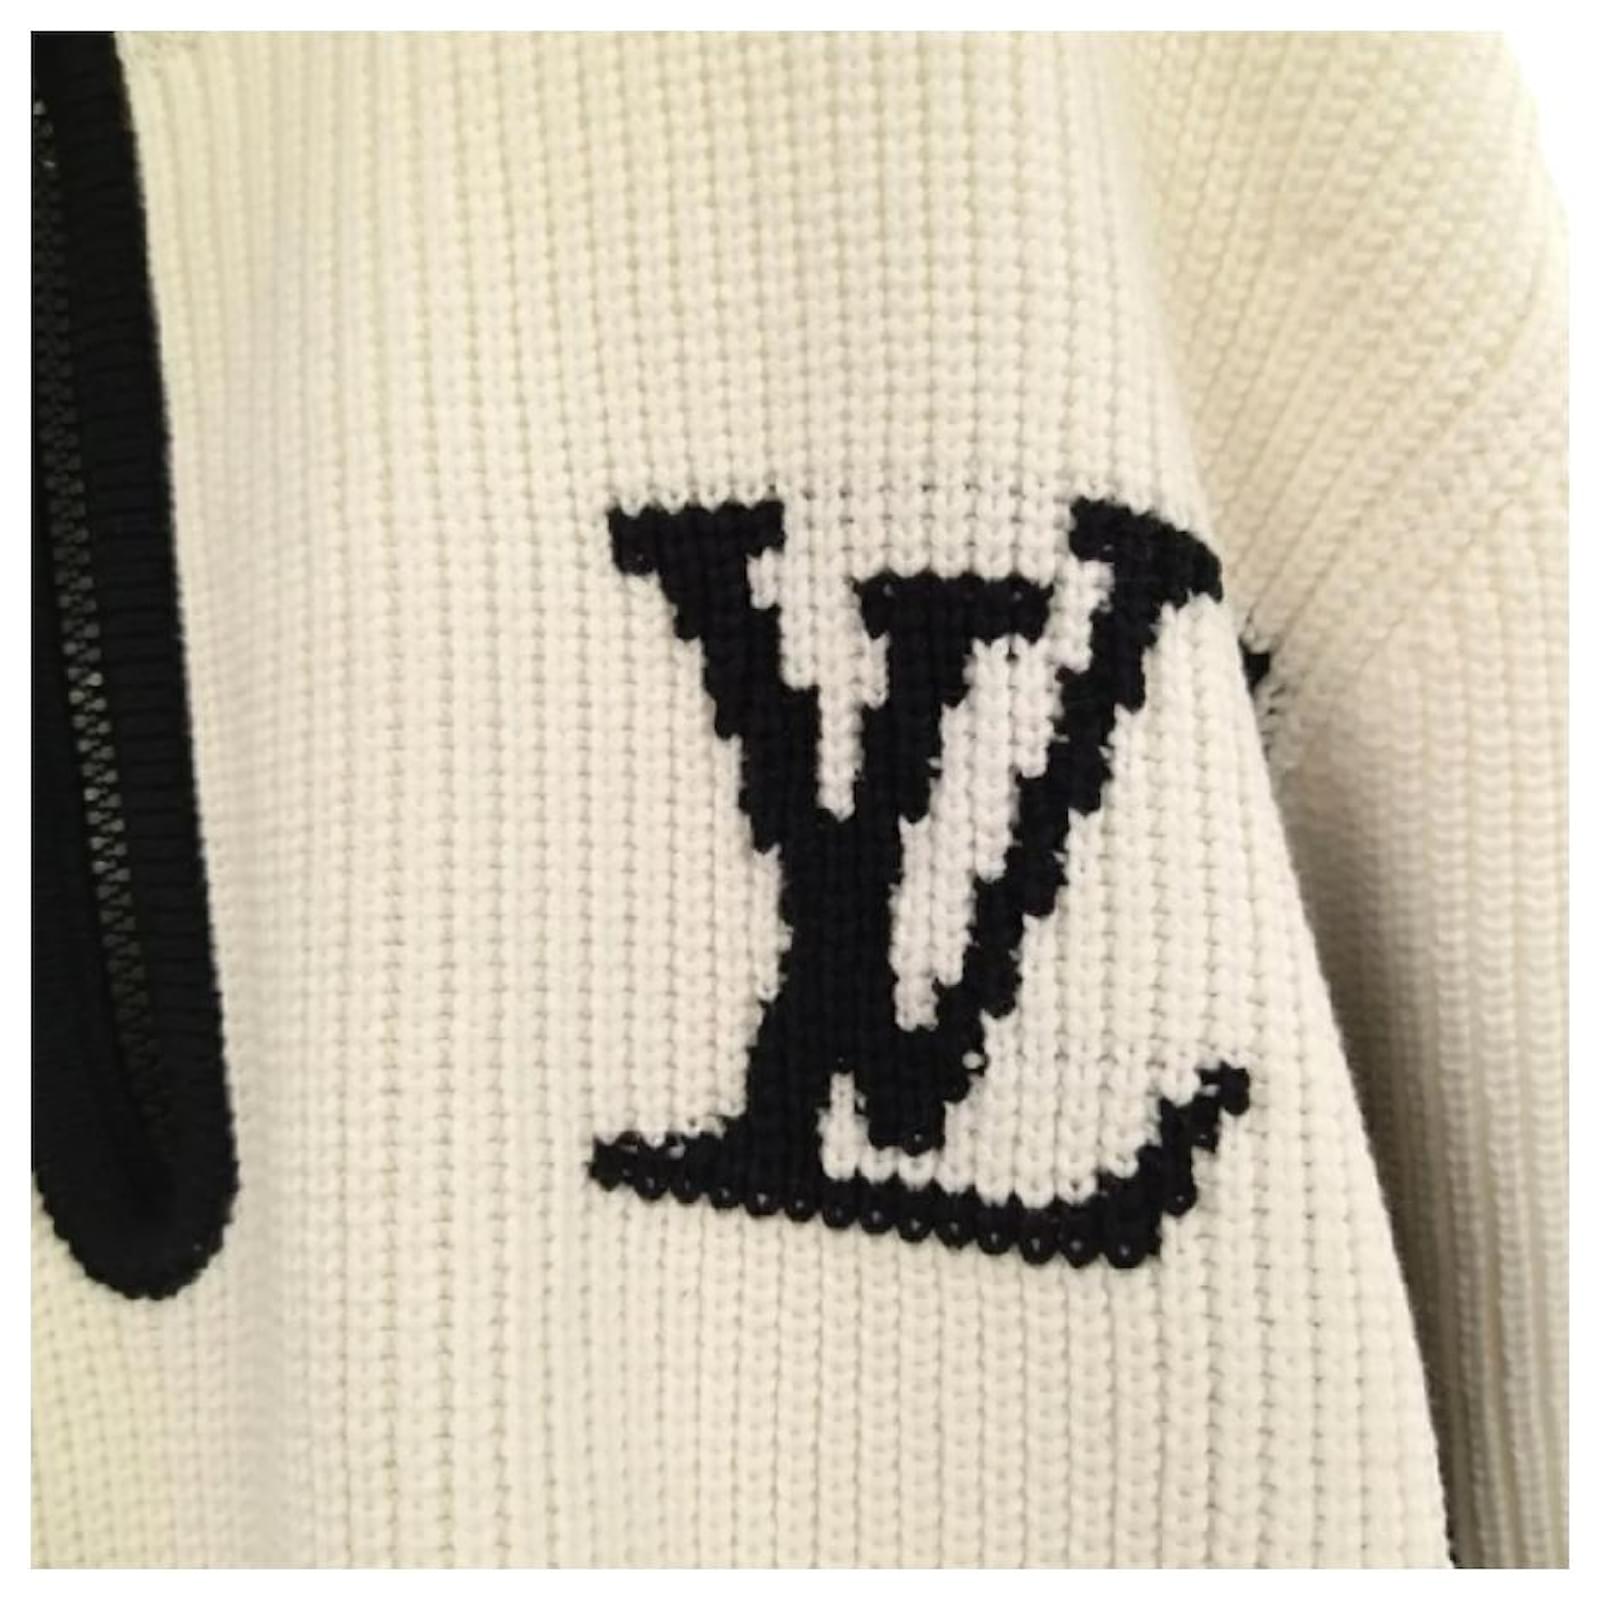 Buy Replica Louis Vuitton Two-Tone Turtleneck Half Zip Sweater